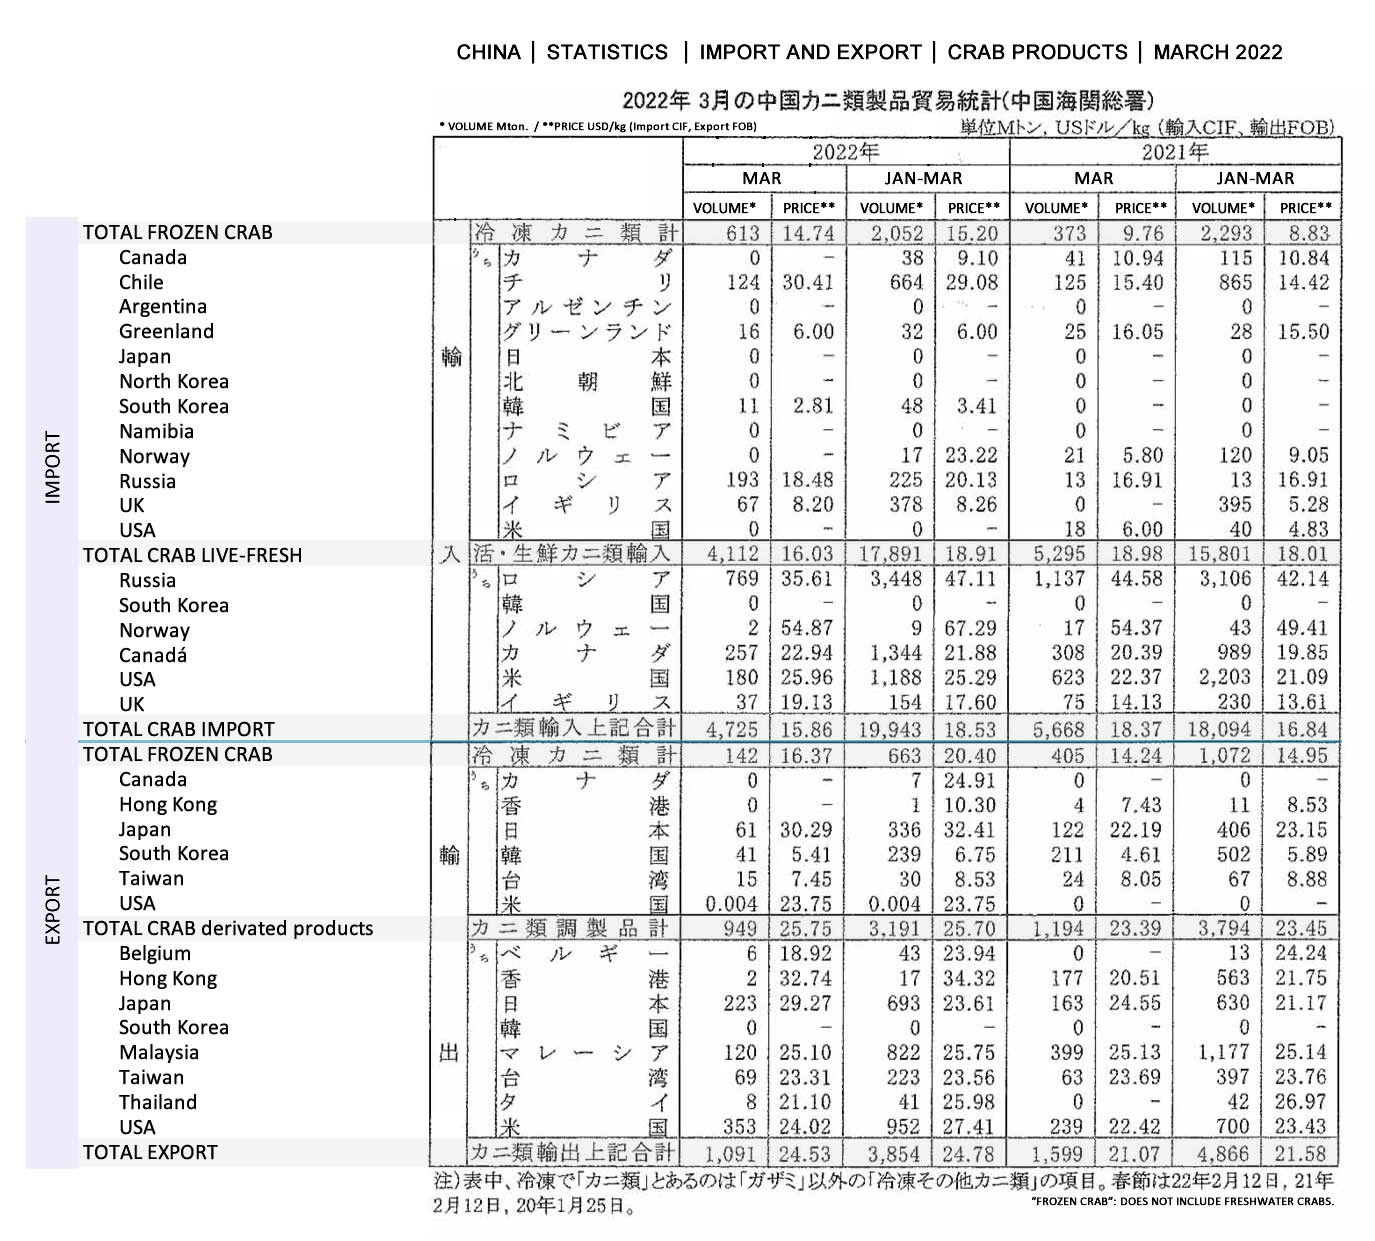 2022051307ing-China-Estadistica de importacion y exportacion de productos de cangrejo FIS seafood_media.jpg